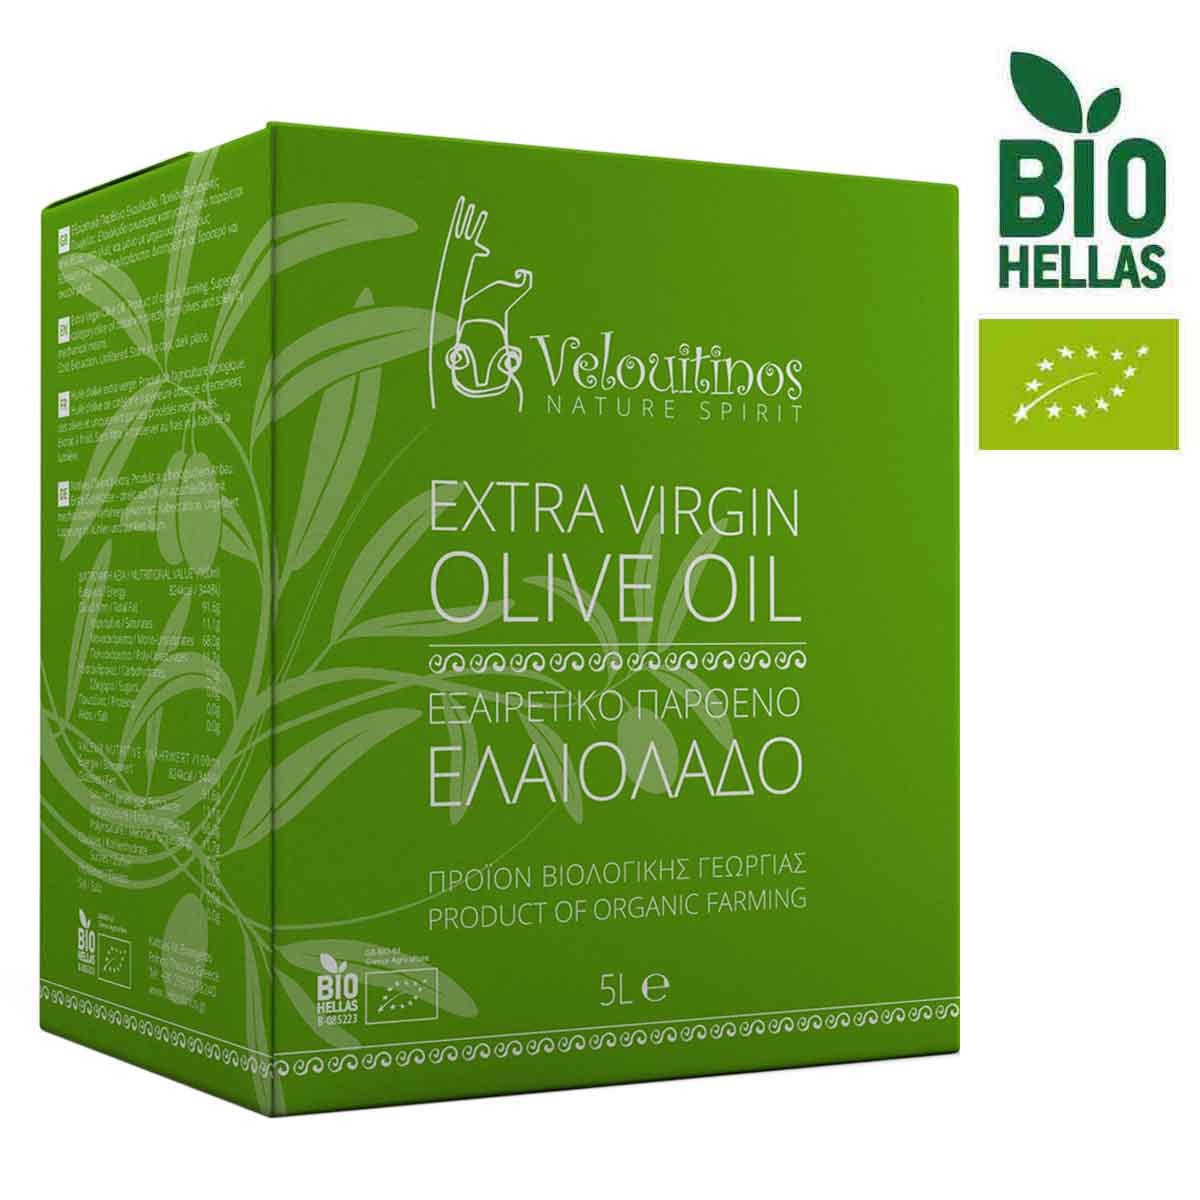 Organic Extra Virgin Olive Oil in "Bag in Box"